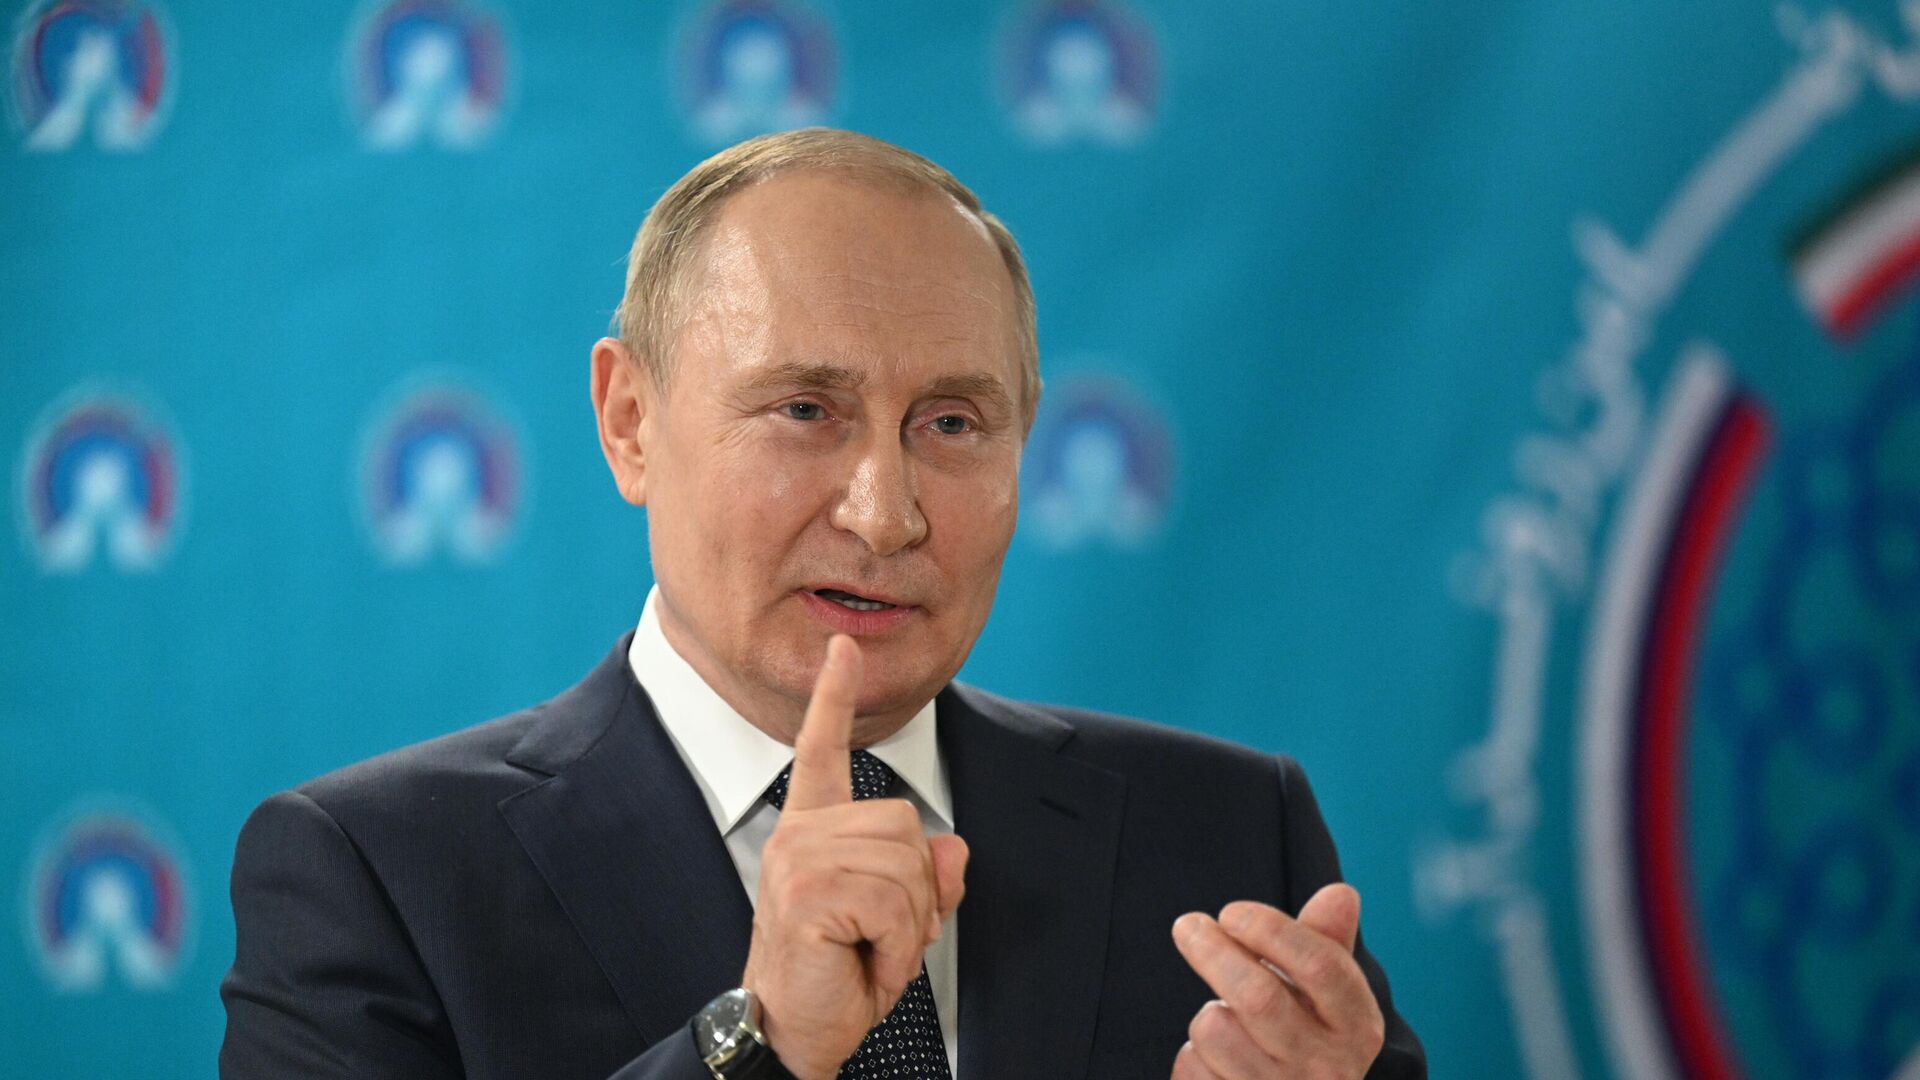 بوتين يقول إن الغرب حوّل الشعب الأوكراني إلى "وقود" في مواجهة روسيا